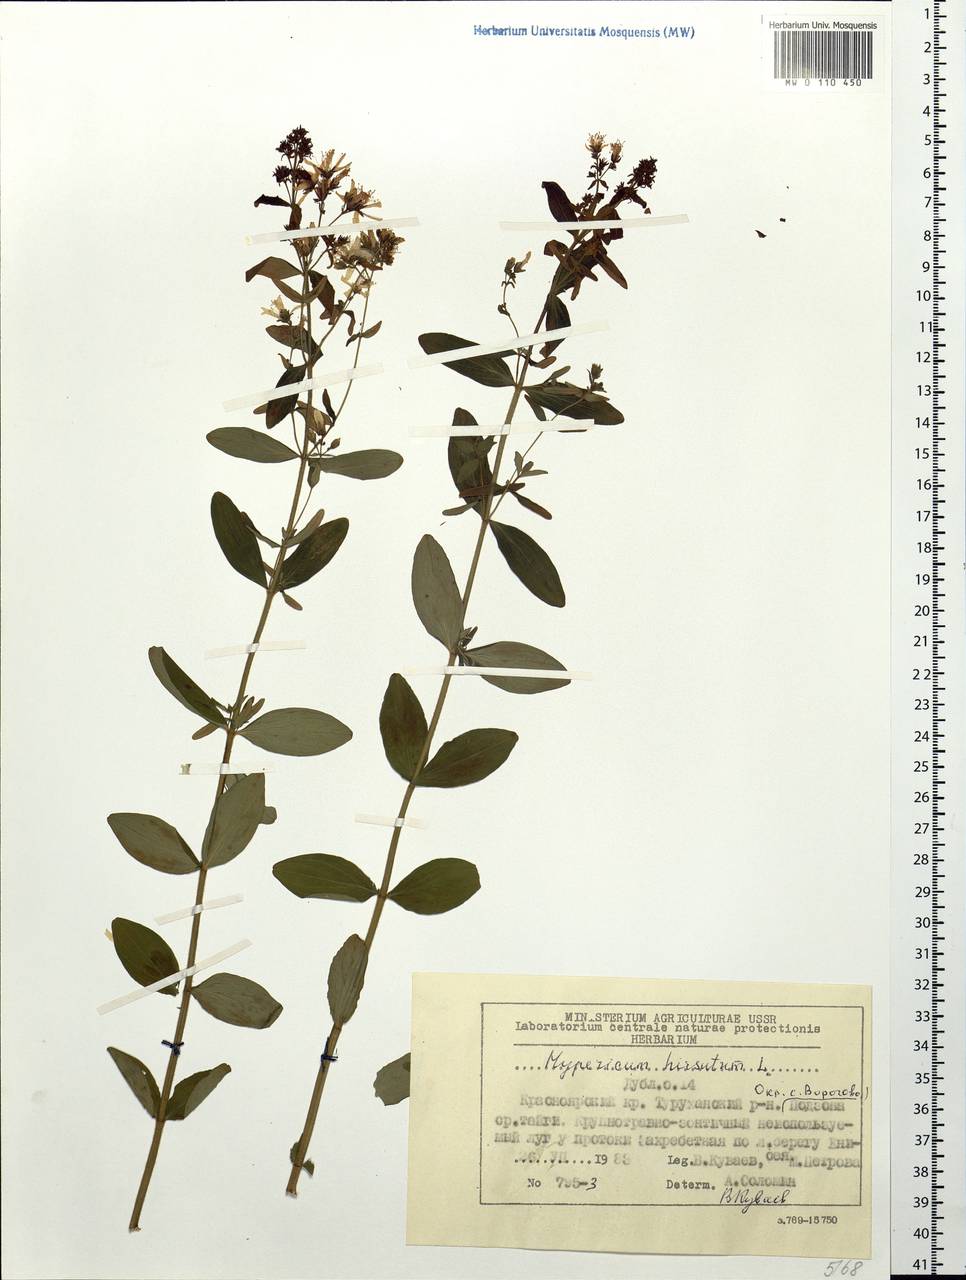 Hypericum hirsutum L., Siberia, Central Siberia (S3) (Russia)